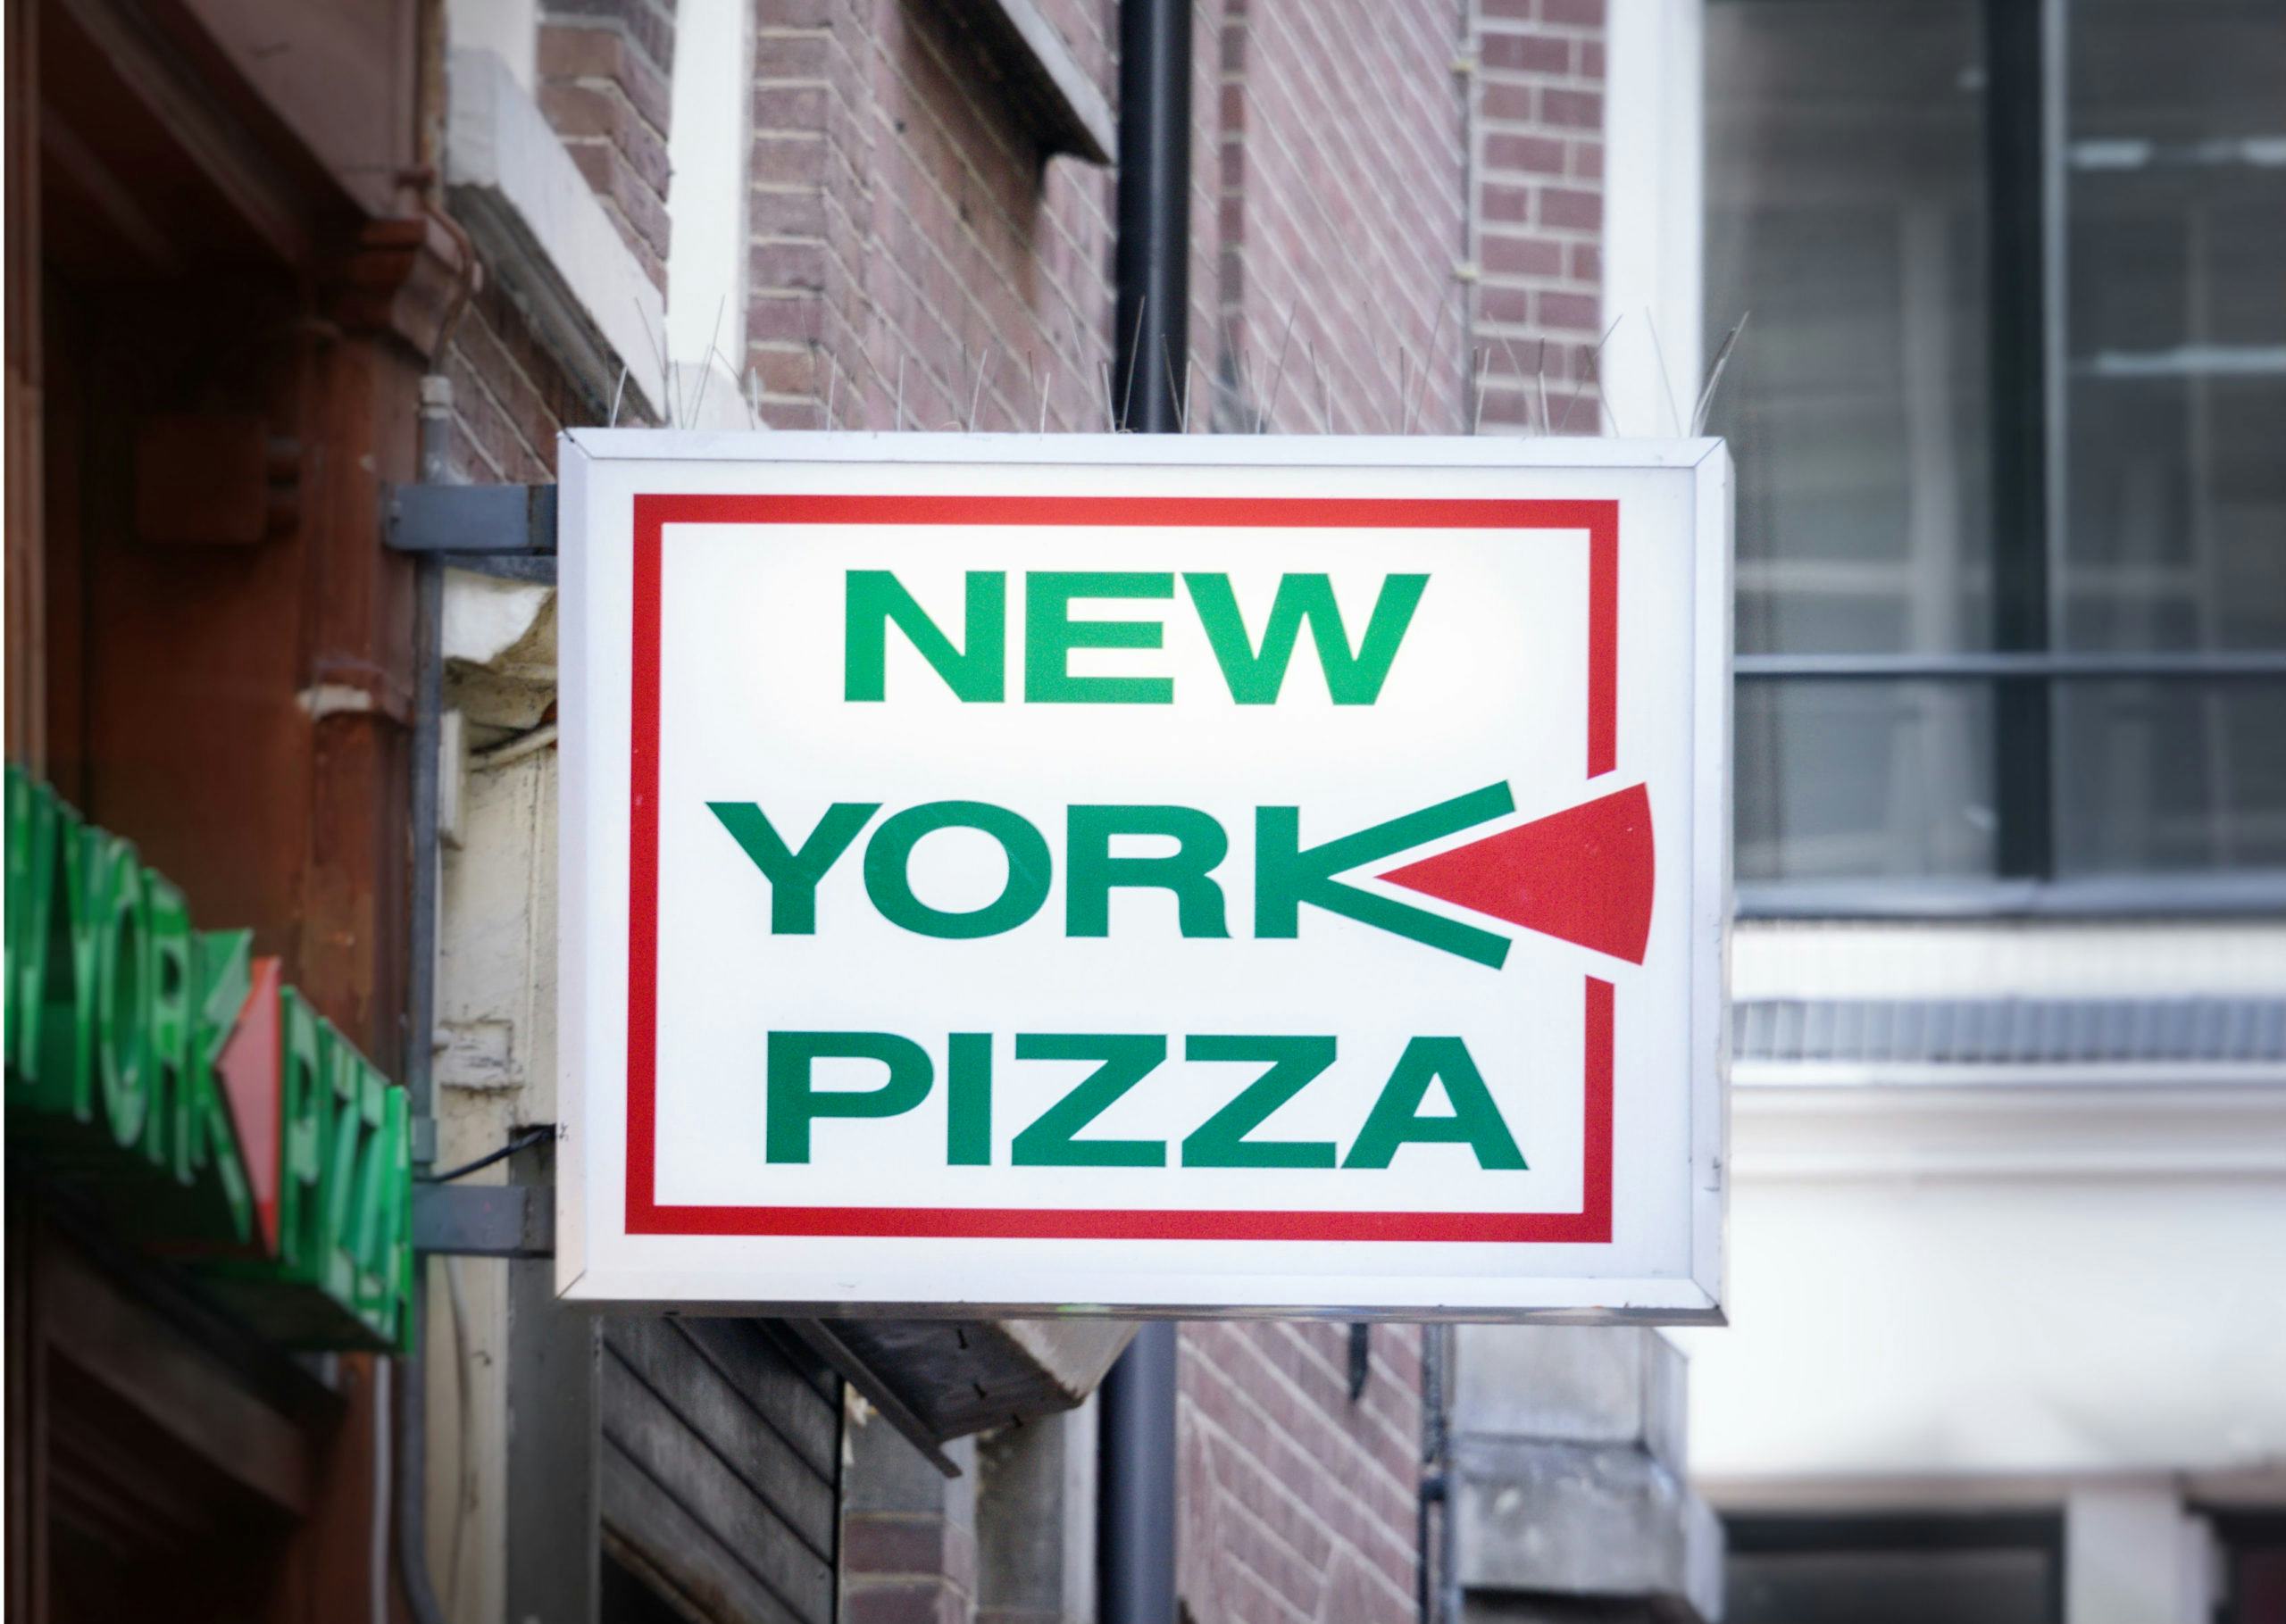 New York Pizza is toch echt fastfood, zegt rechter